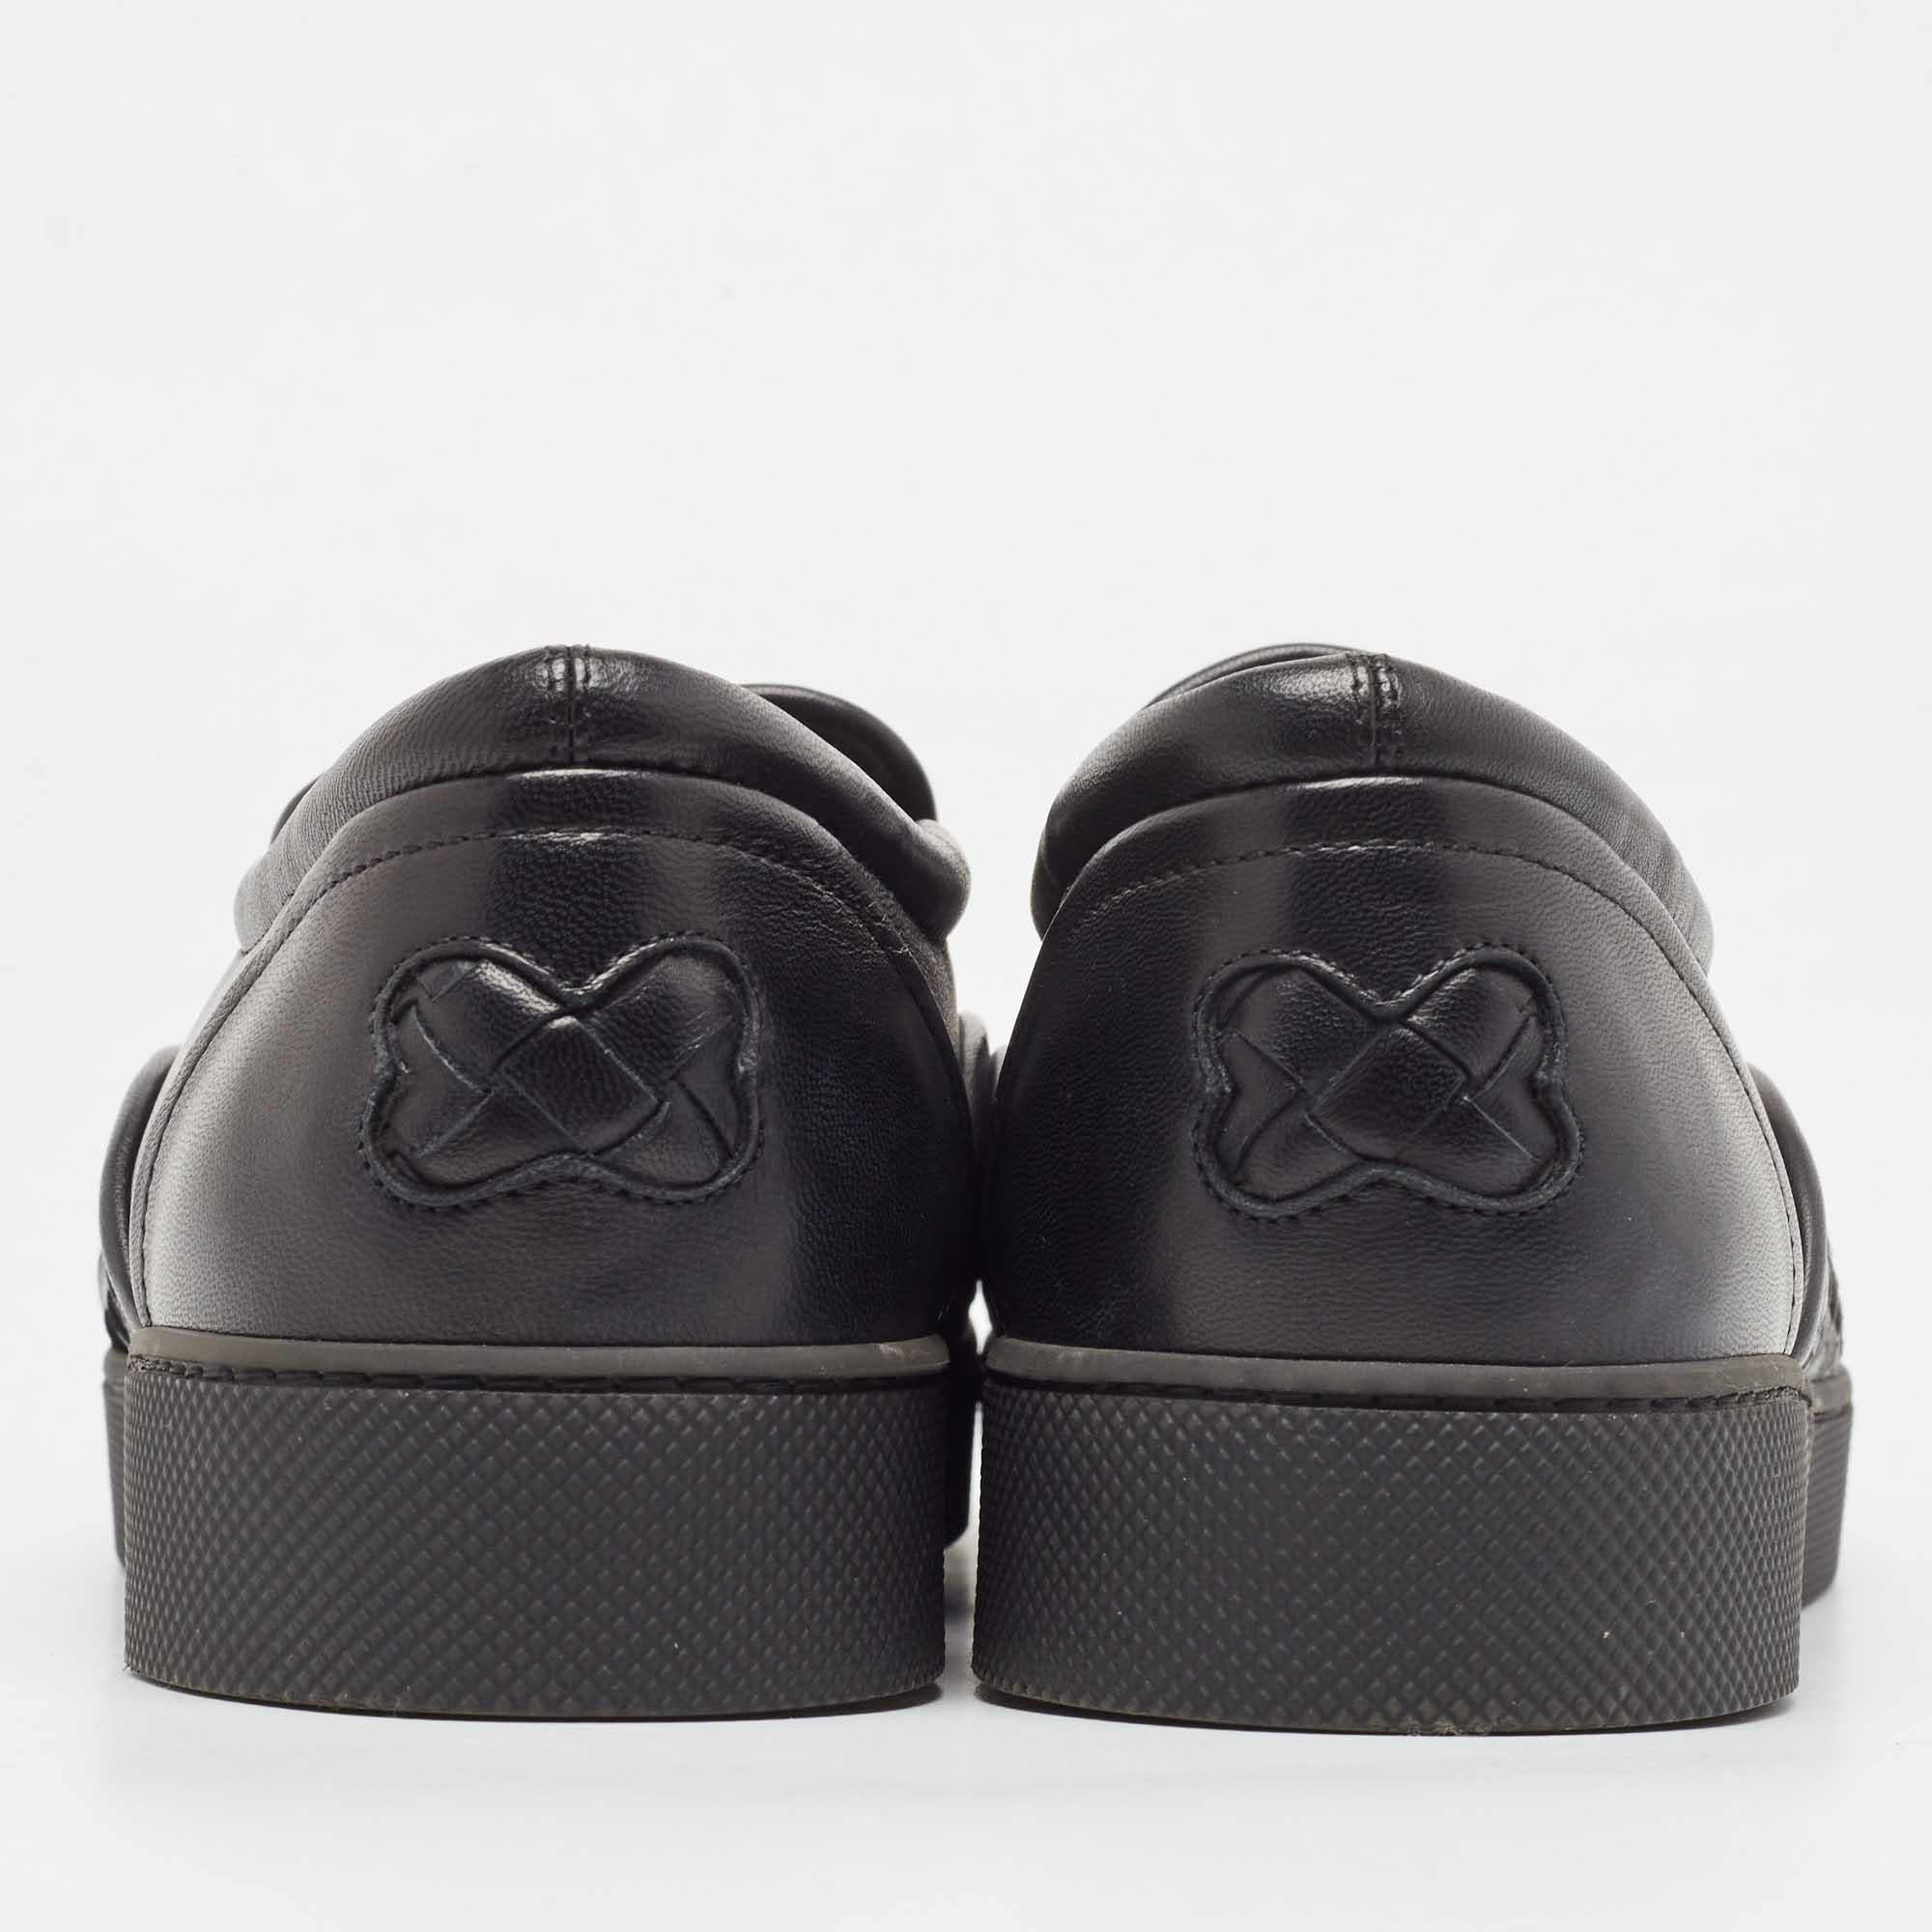 Bottega Veneta Black Intrecciato Leather Slip On Sneakers Size 40 4